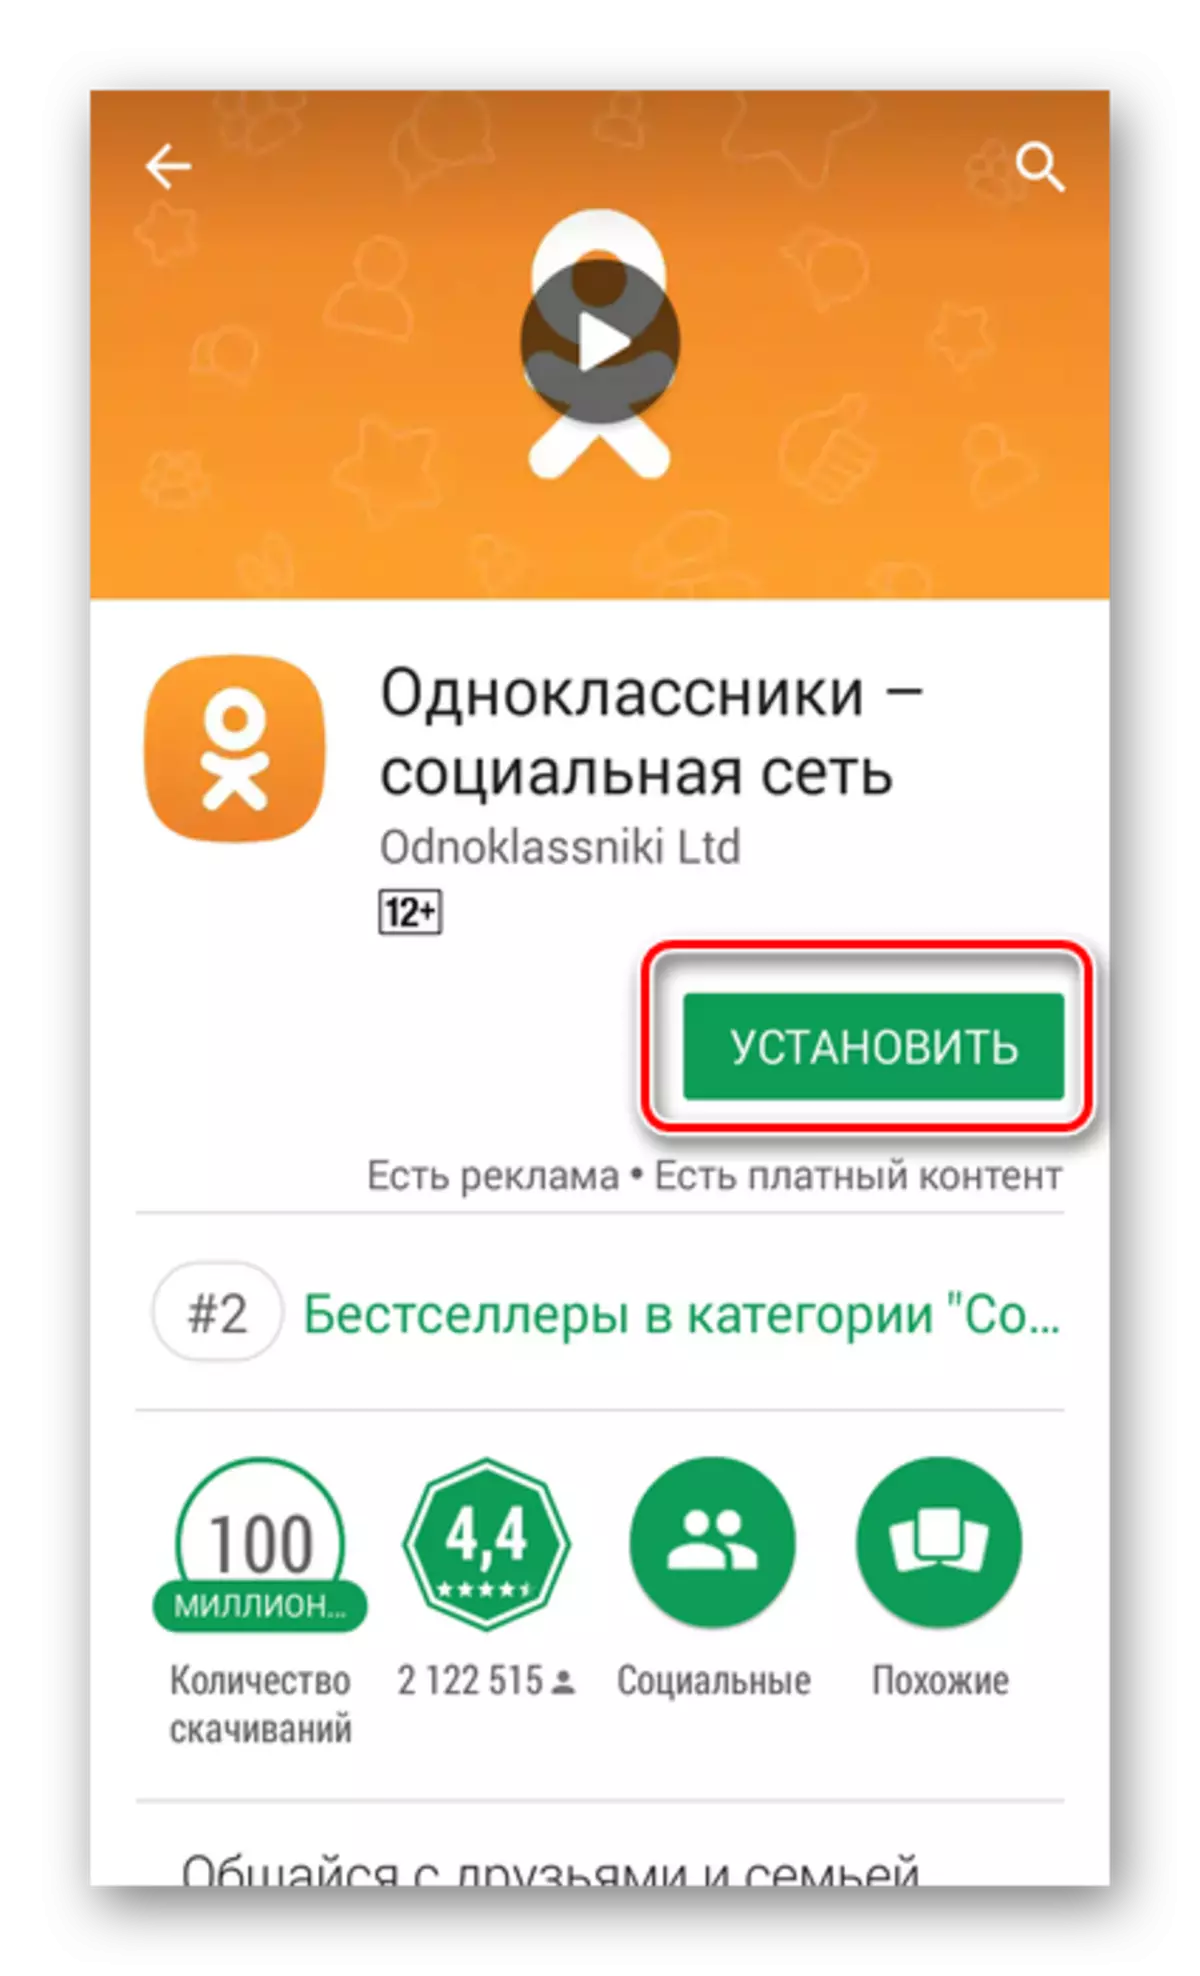 Odnoklassnikiアプリをインストールしてください